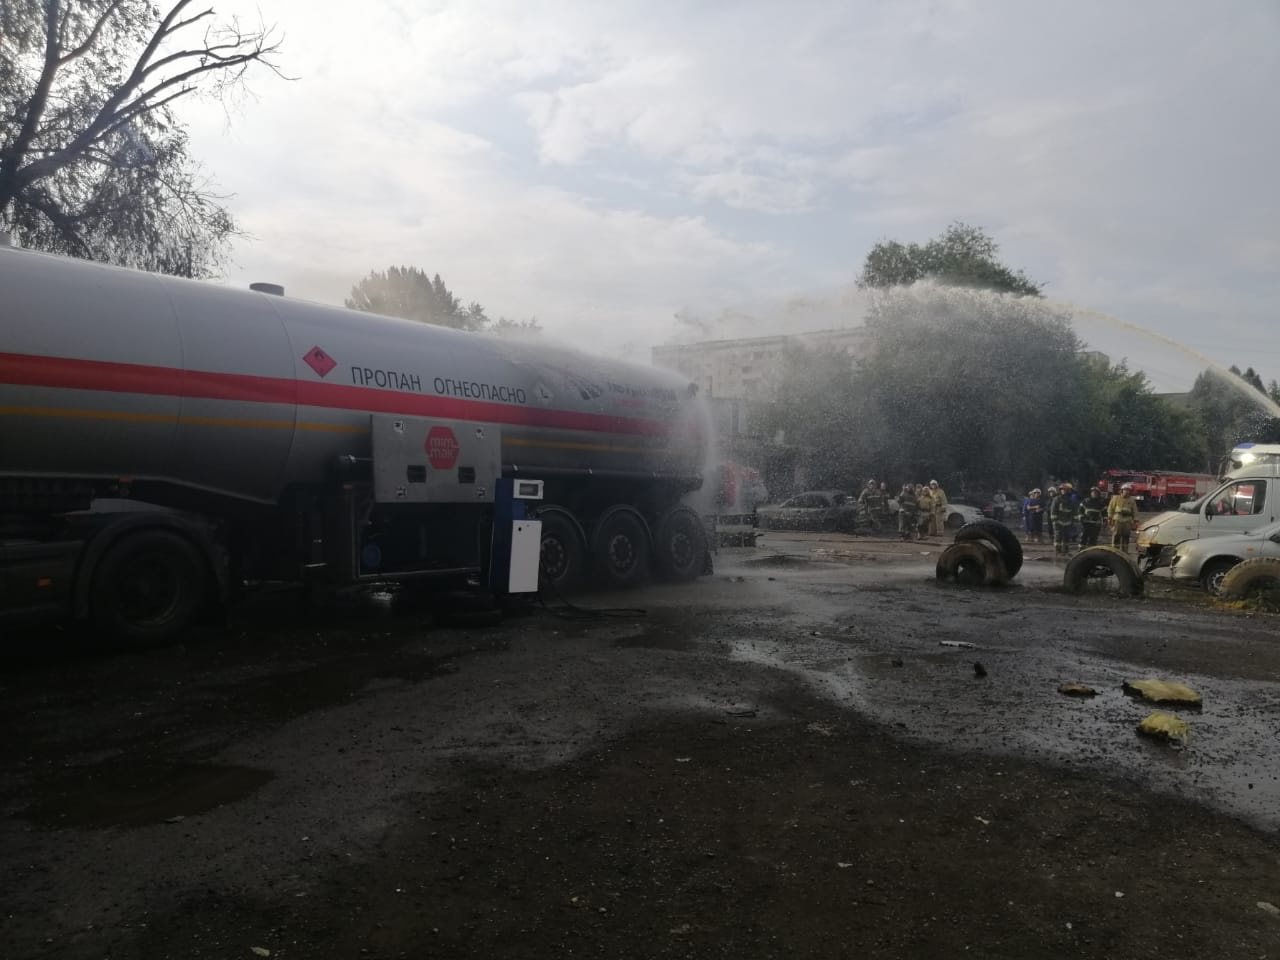 Сотрудники МЧС охлаждали прицеп грузовика с топливом, чтобы он не загорелся